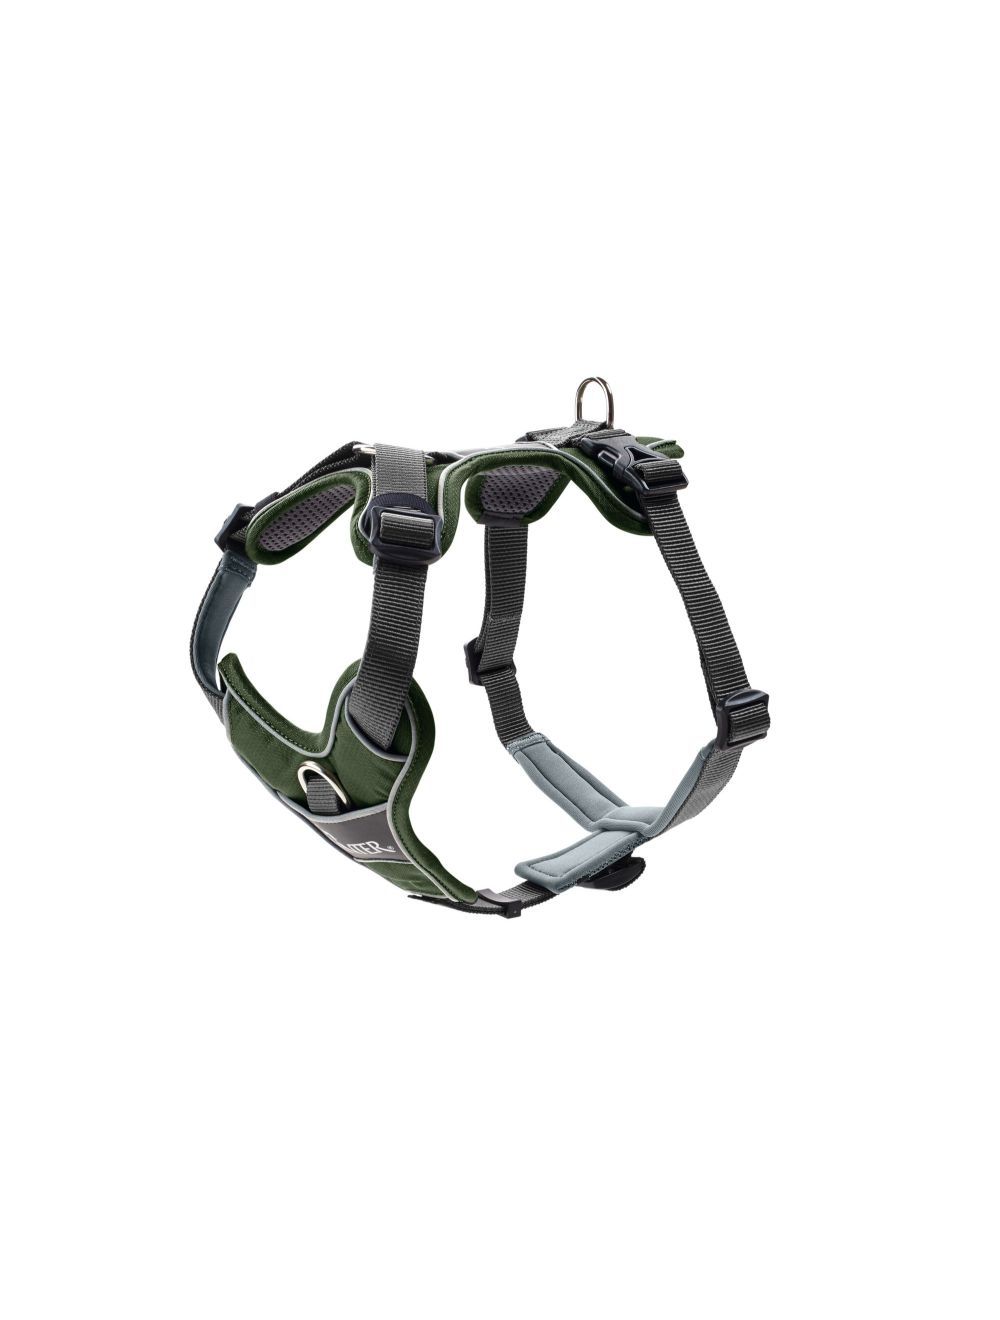 Hunter - Harness Divo L-XL, green/grey - (67594)